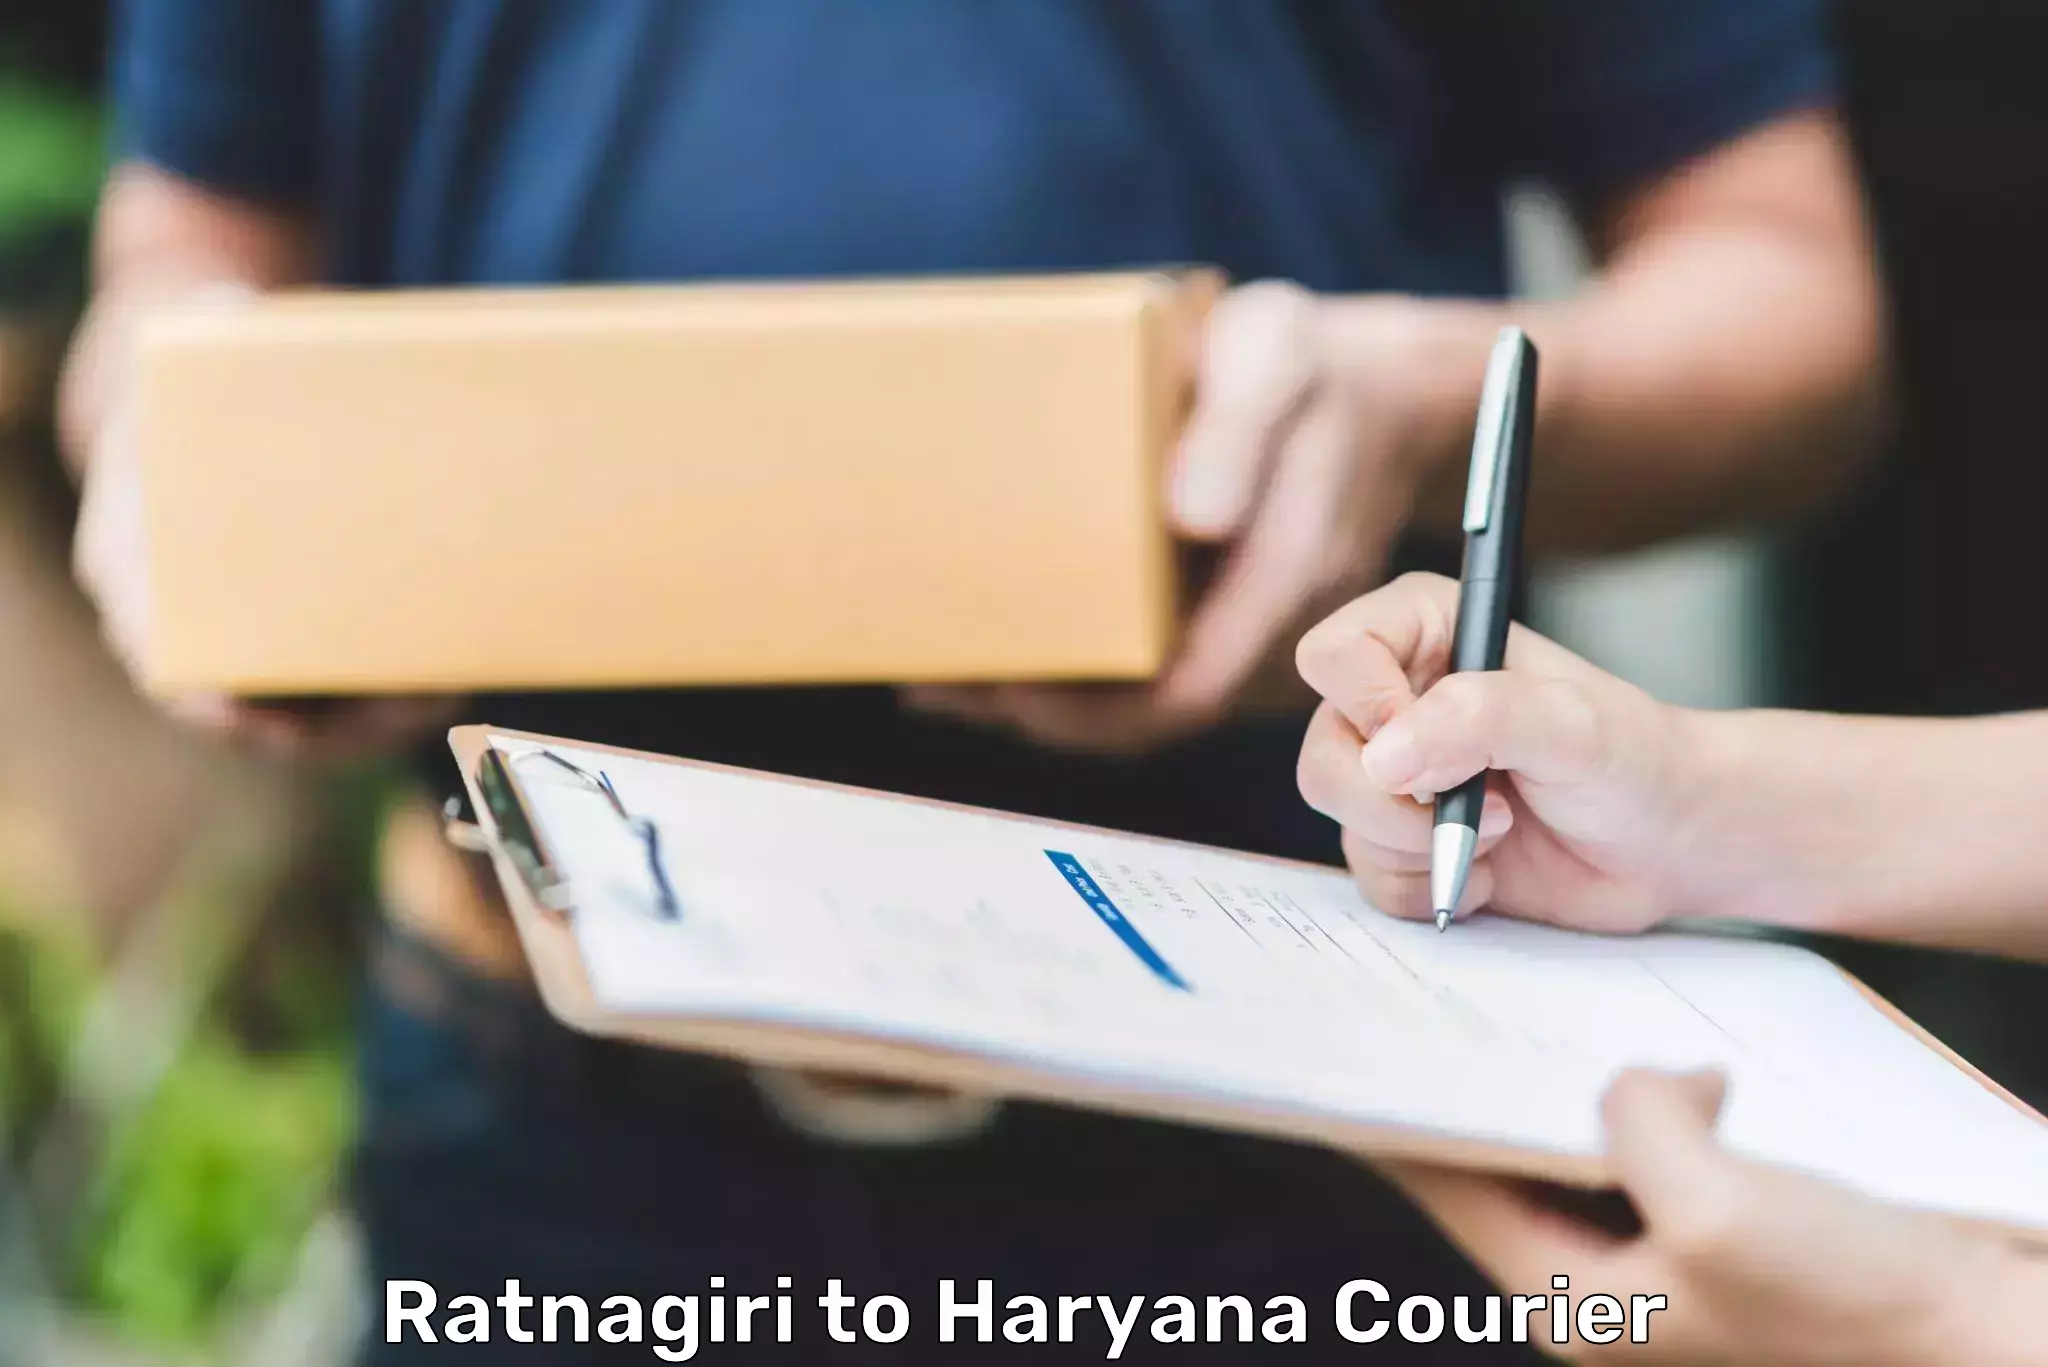 Parcel handling and care Ratnagiri to Haryana